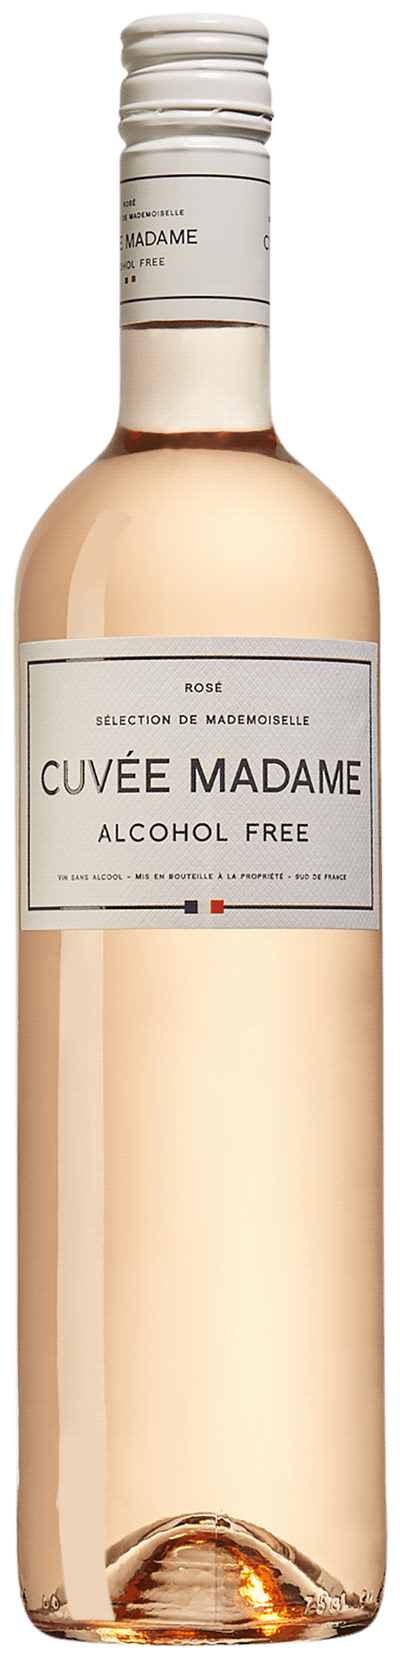 Cuvée Madame Alcohol Free